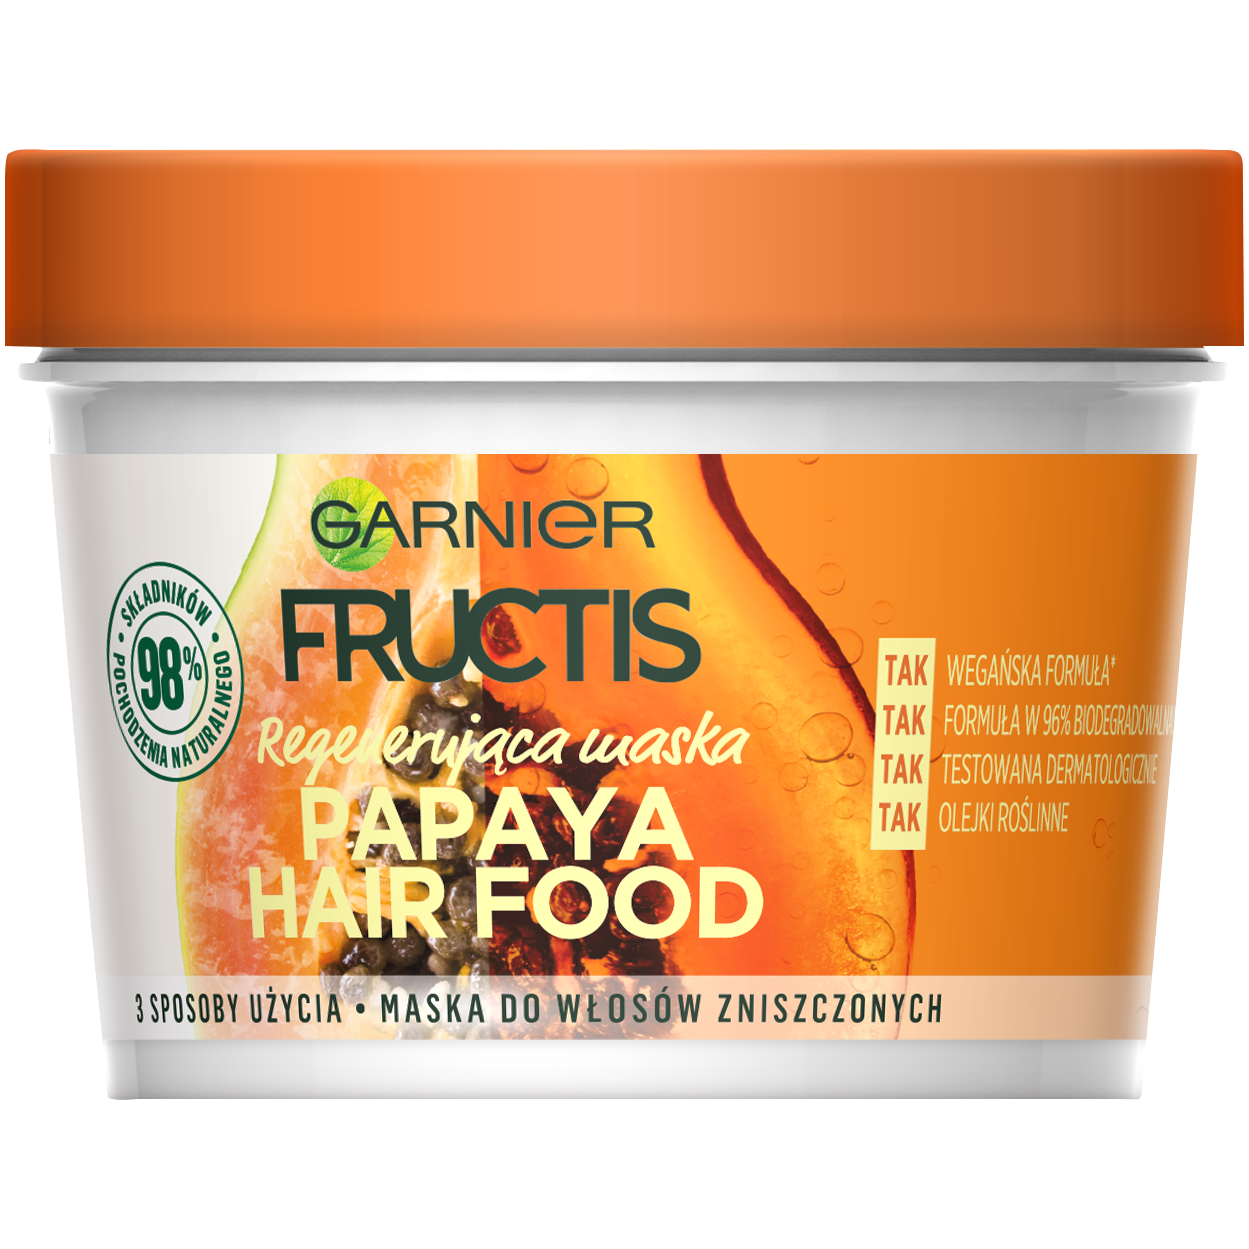 Garnier maska do włosów zniszczonych 390ml Fructis Papaya Hair Food |  hebe.pl